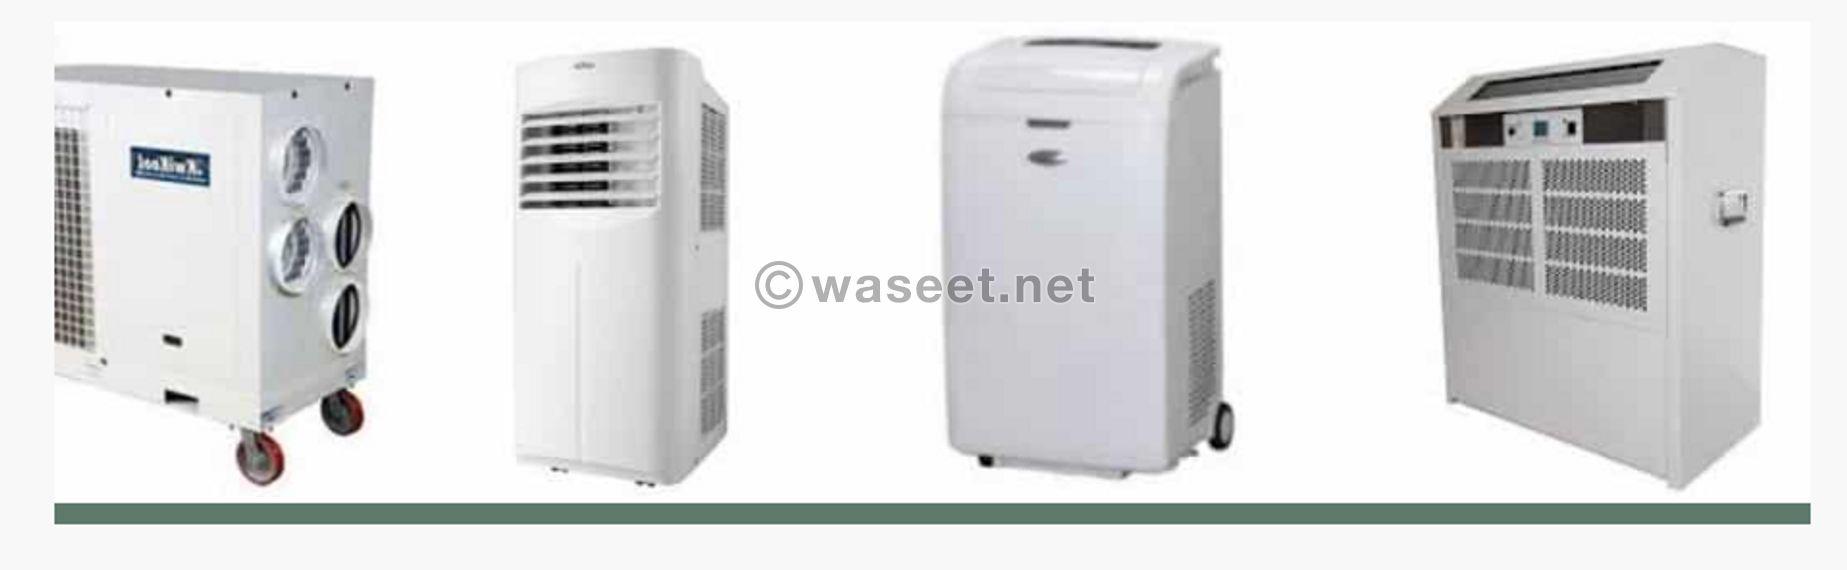 Portable Air Conditioners In Dubai 1